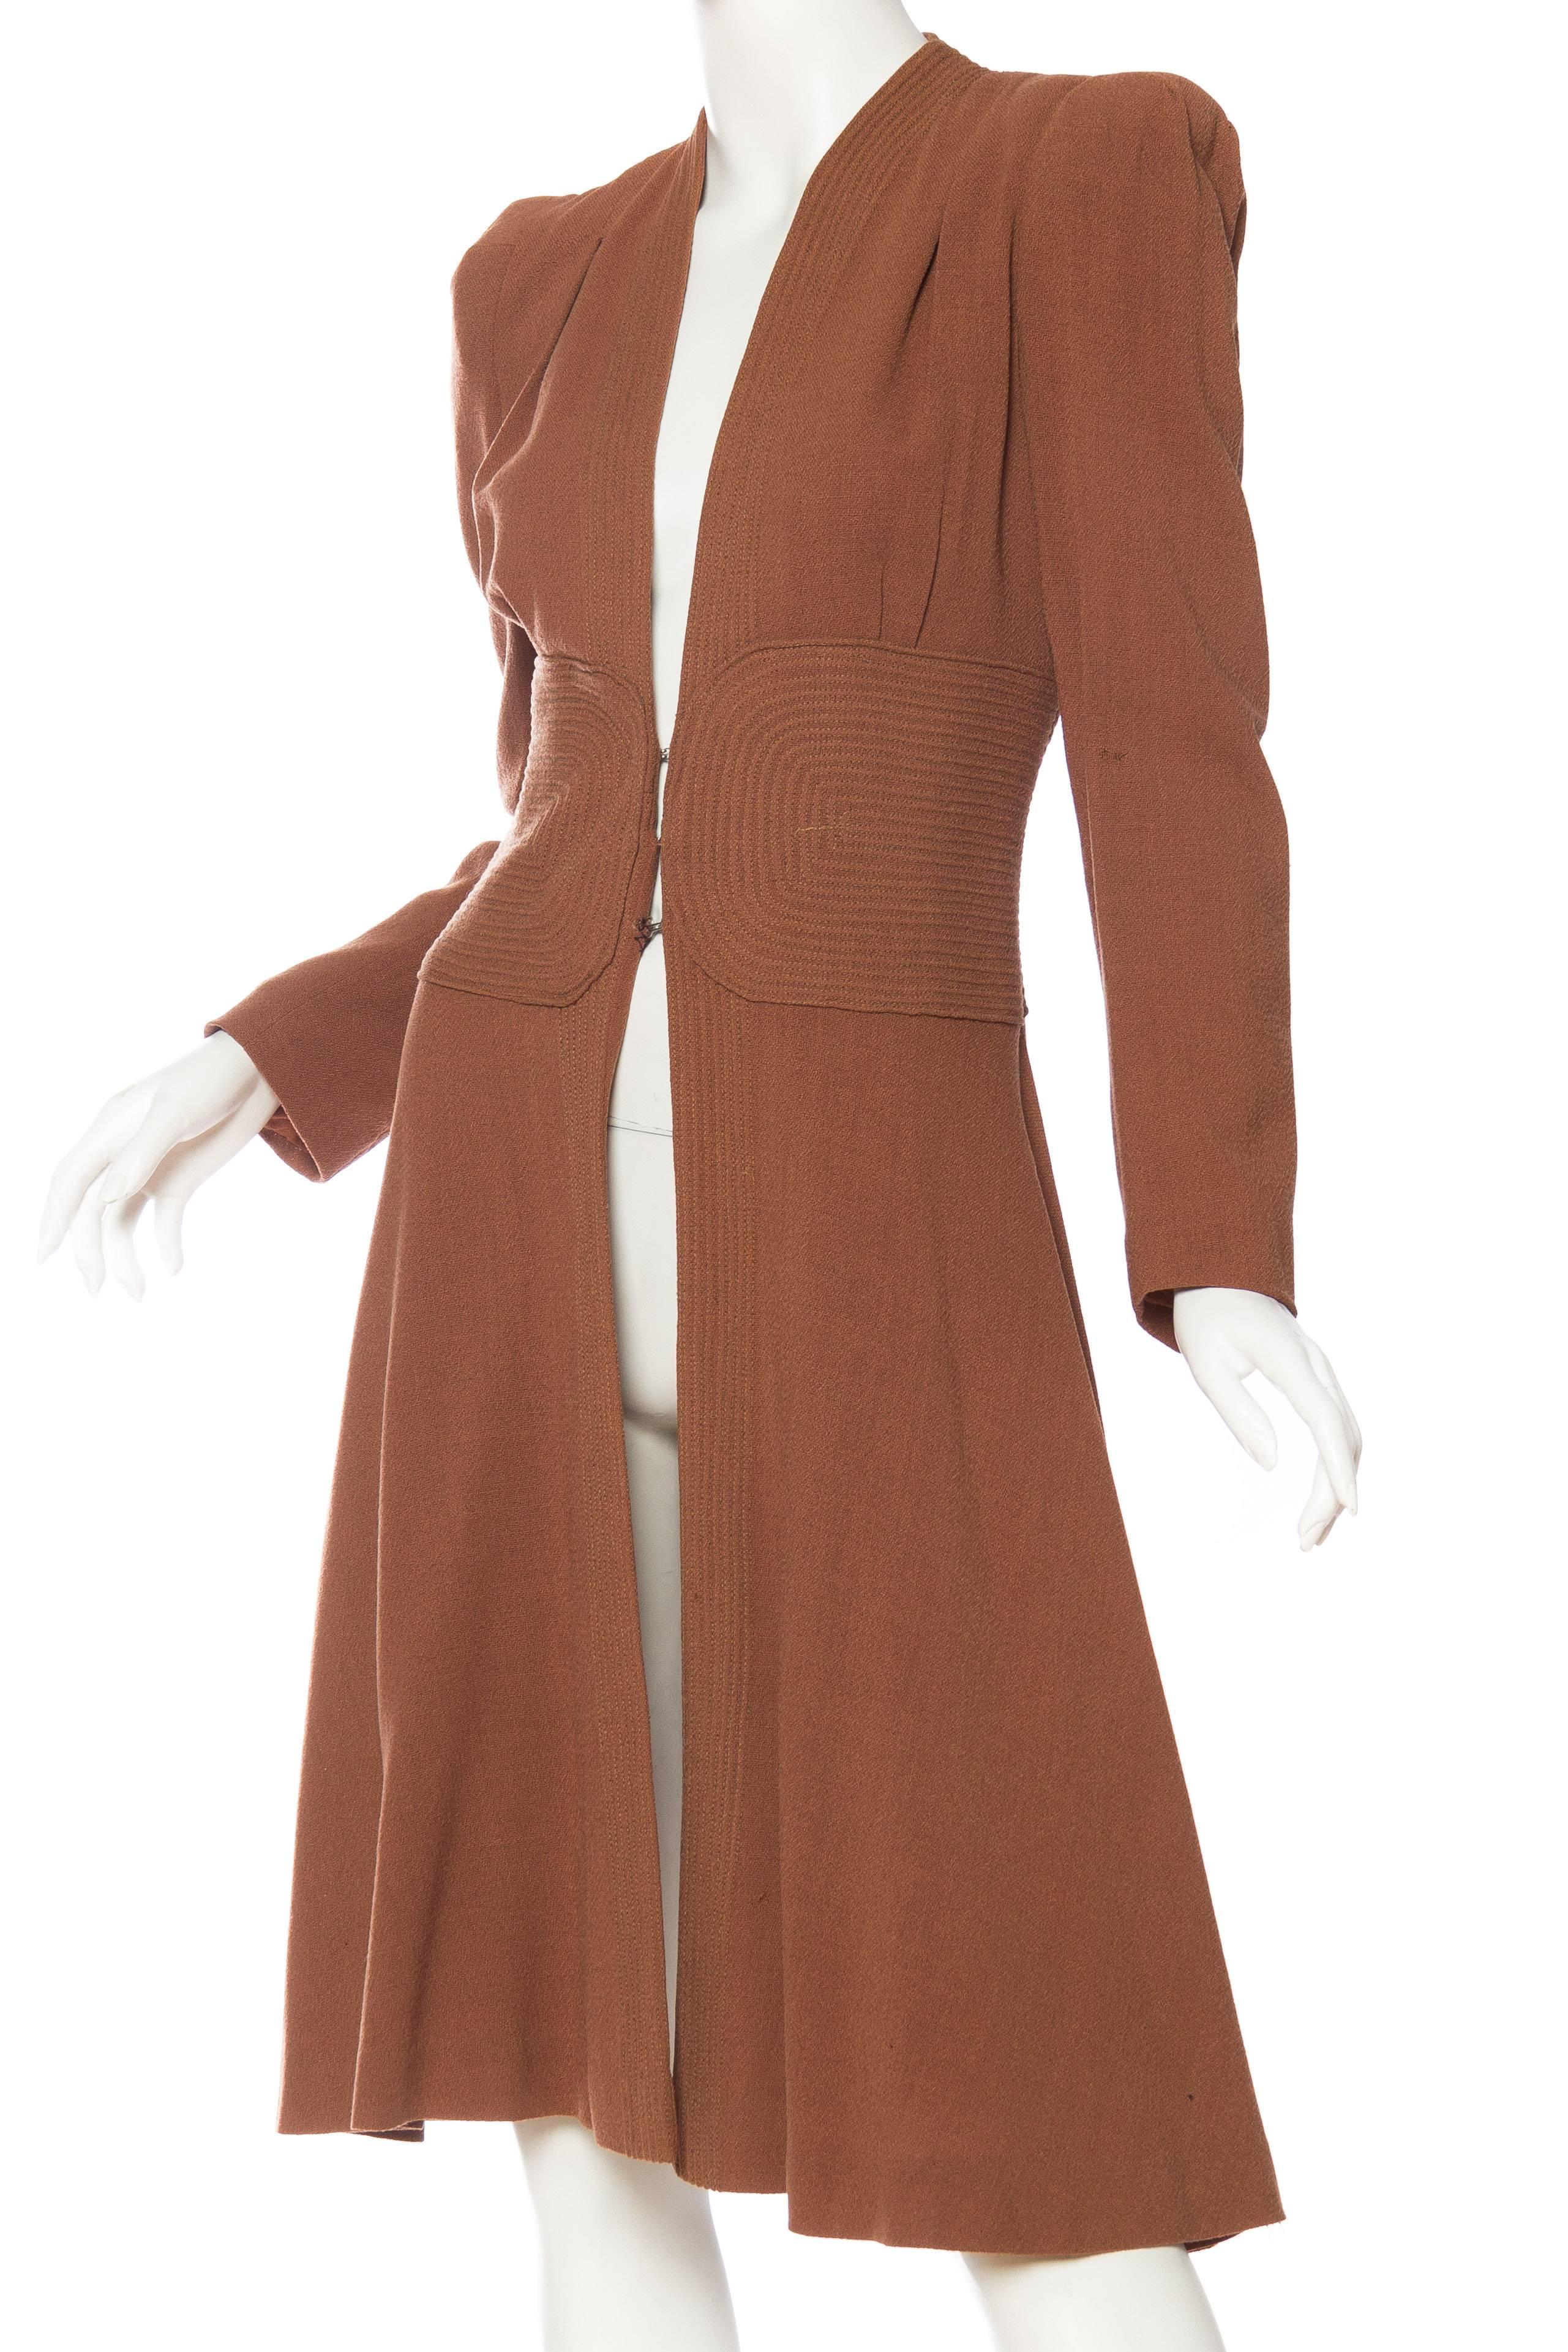 1930s Biba Style Wool Coat  1